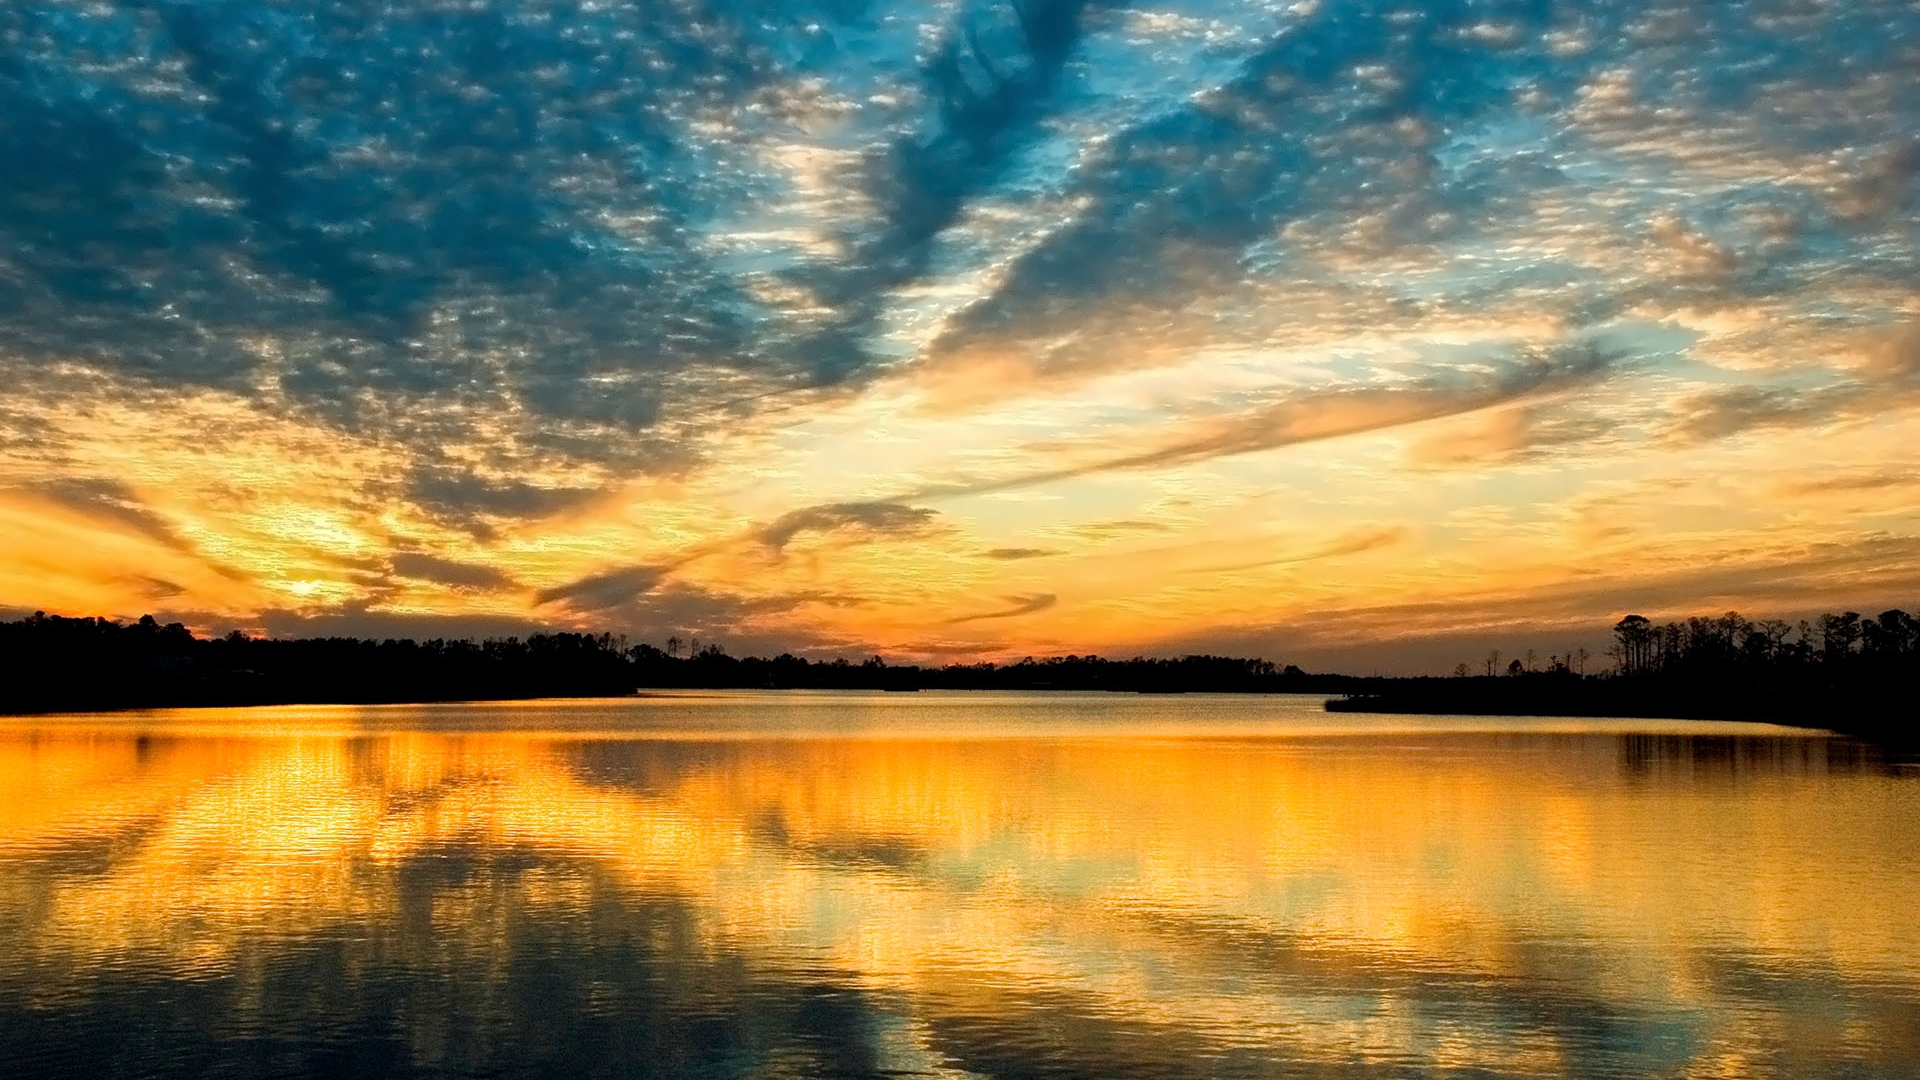 Nature wallpaper - Sky, water, Dimgray, Gainsboro | Wallpaper free ...